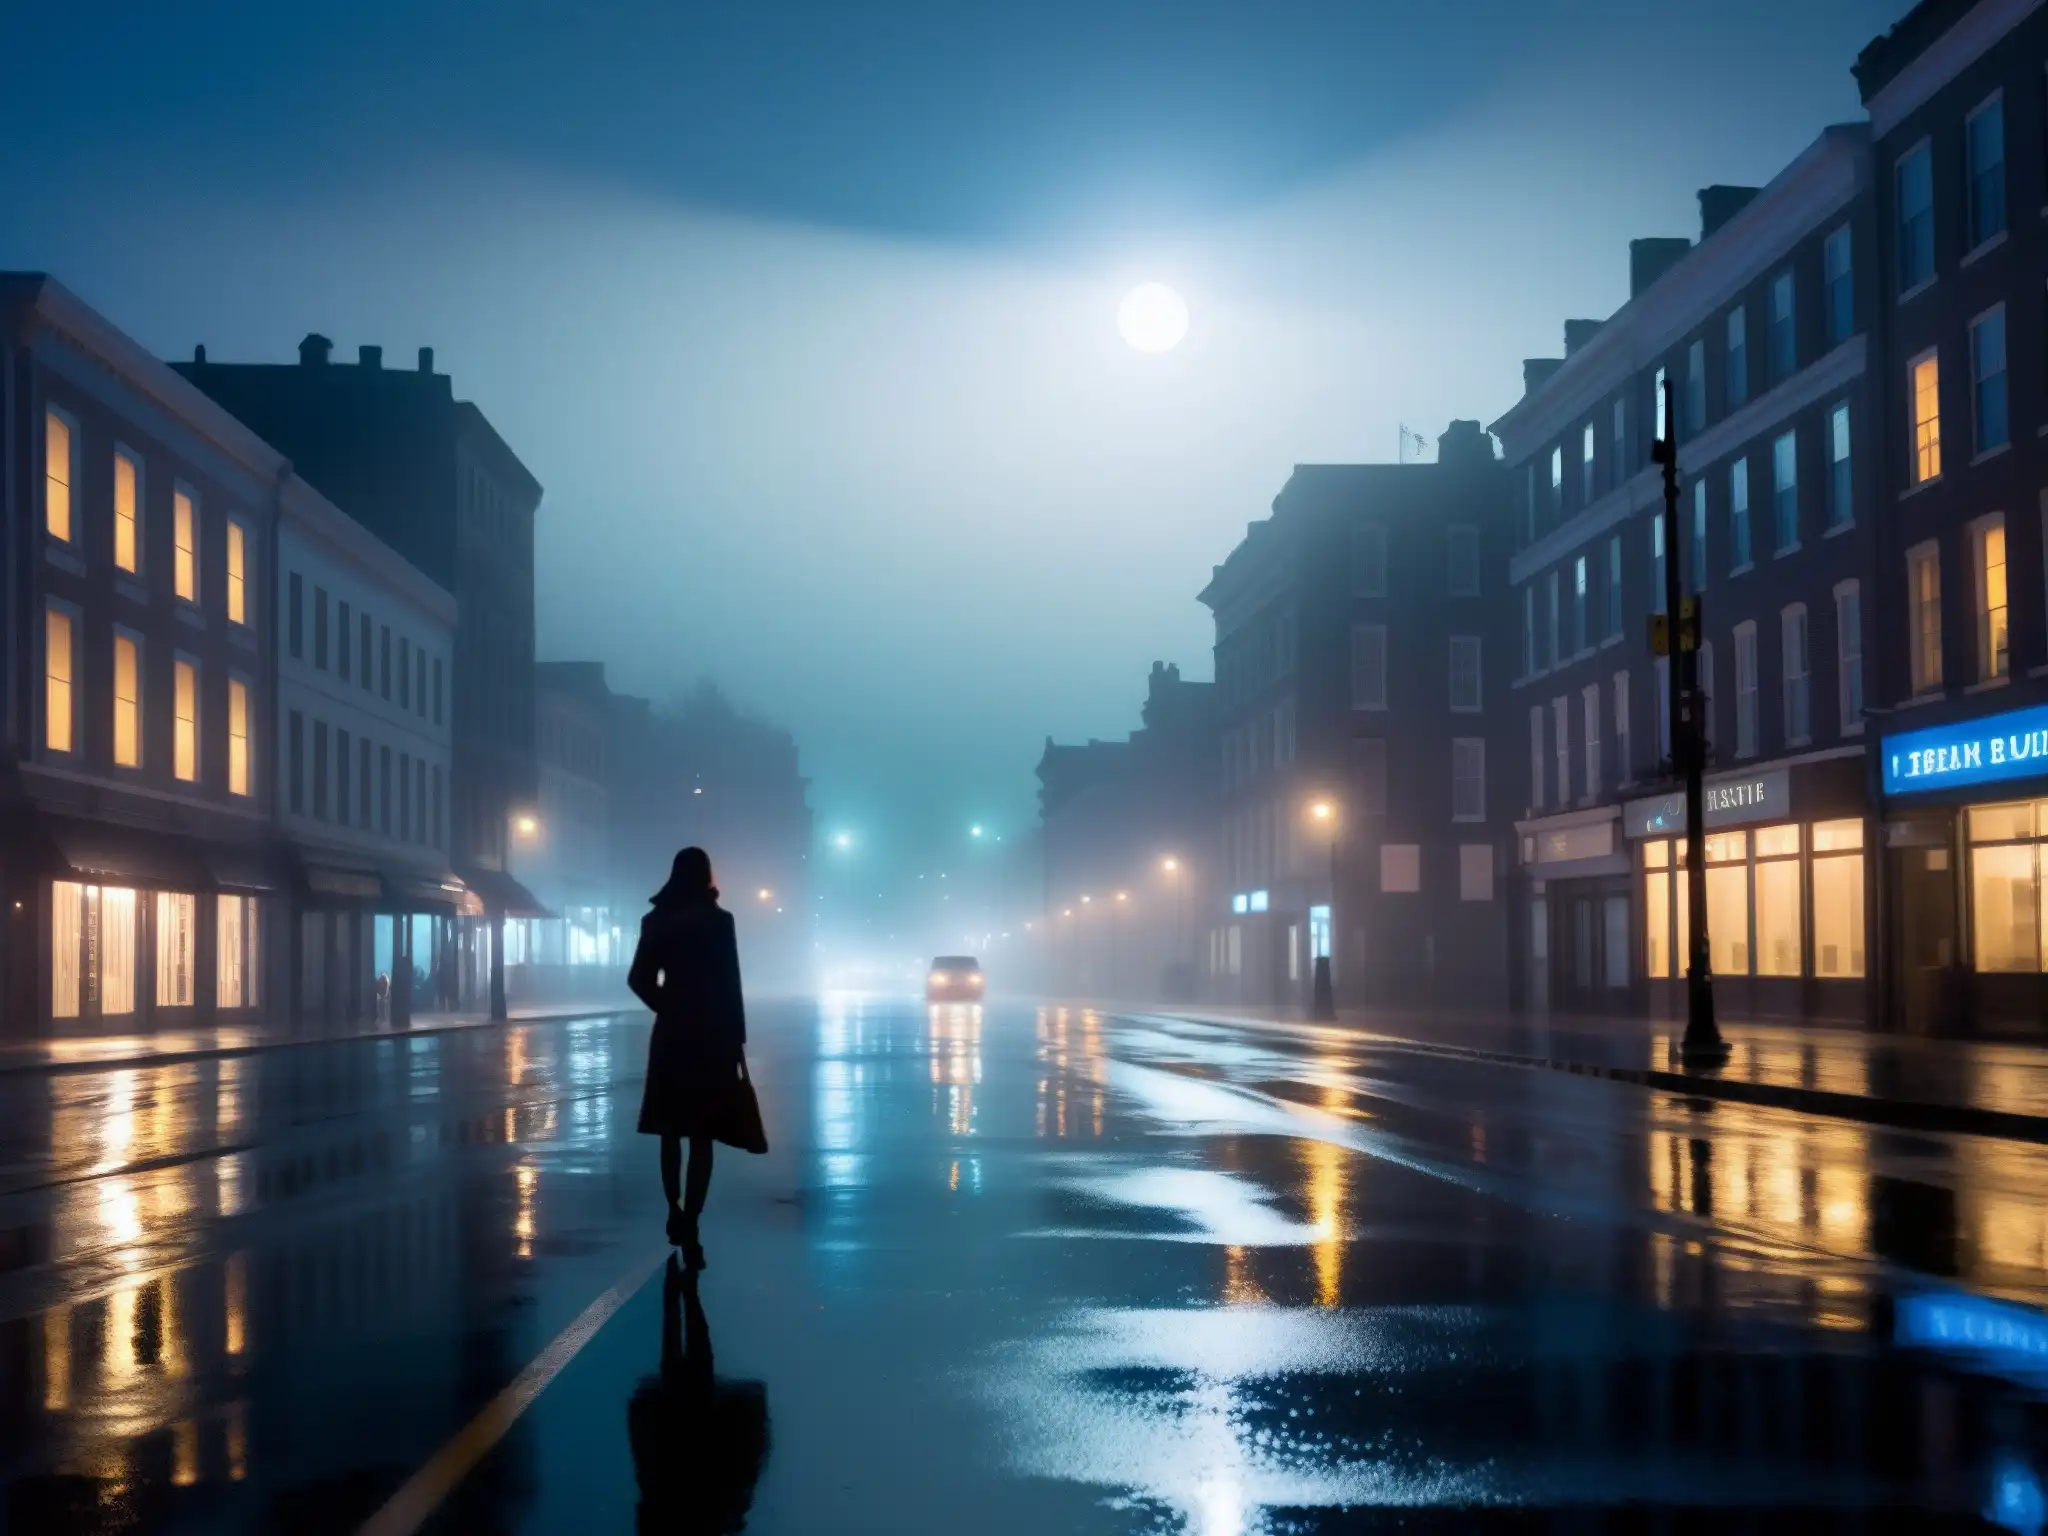 Una calle neblinosa de la ciudad de noche, con luces de farolas creando sombras largas y una atmósfera misteriosa